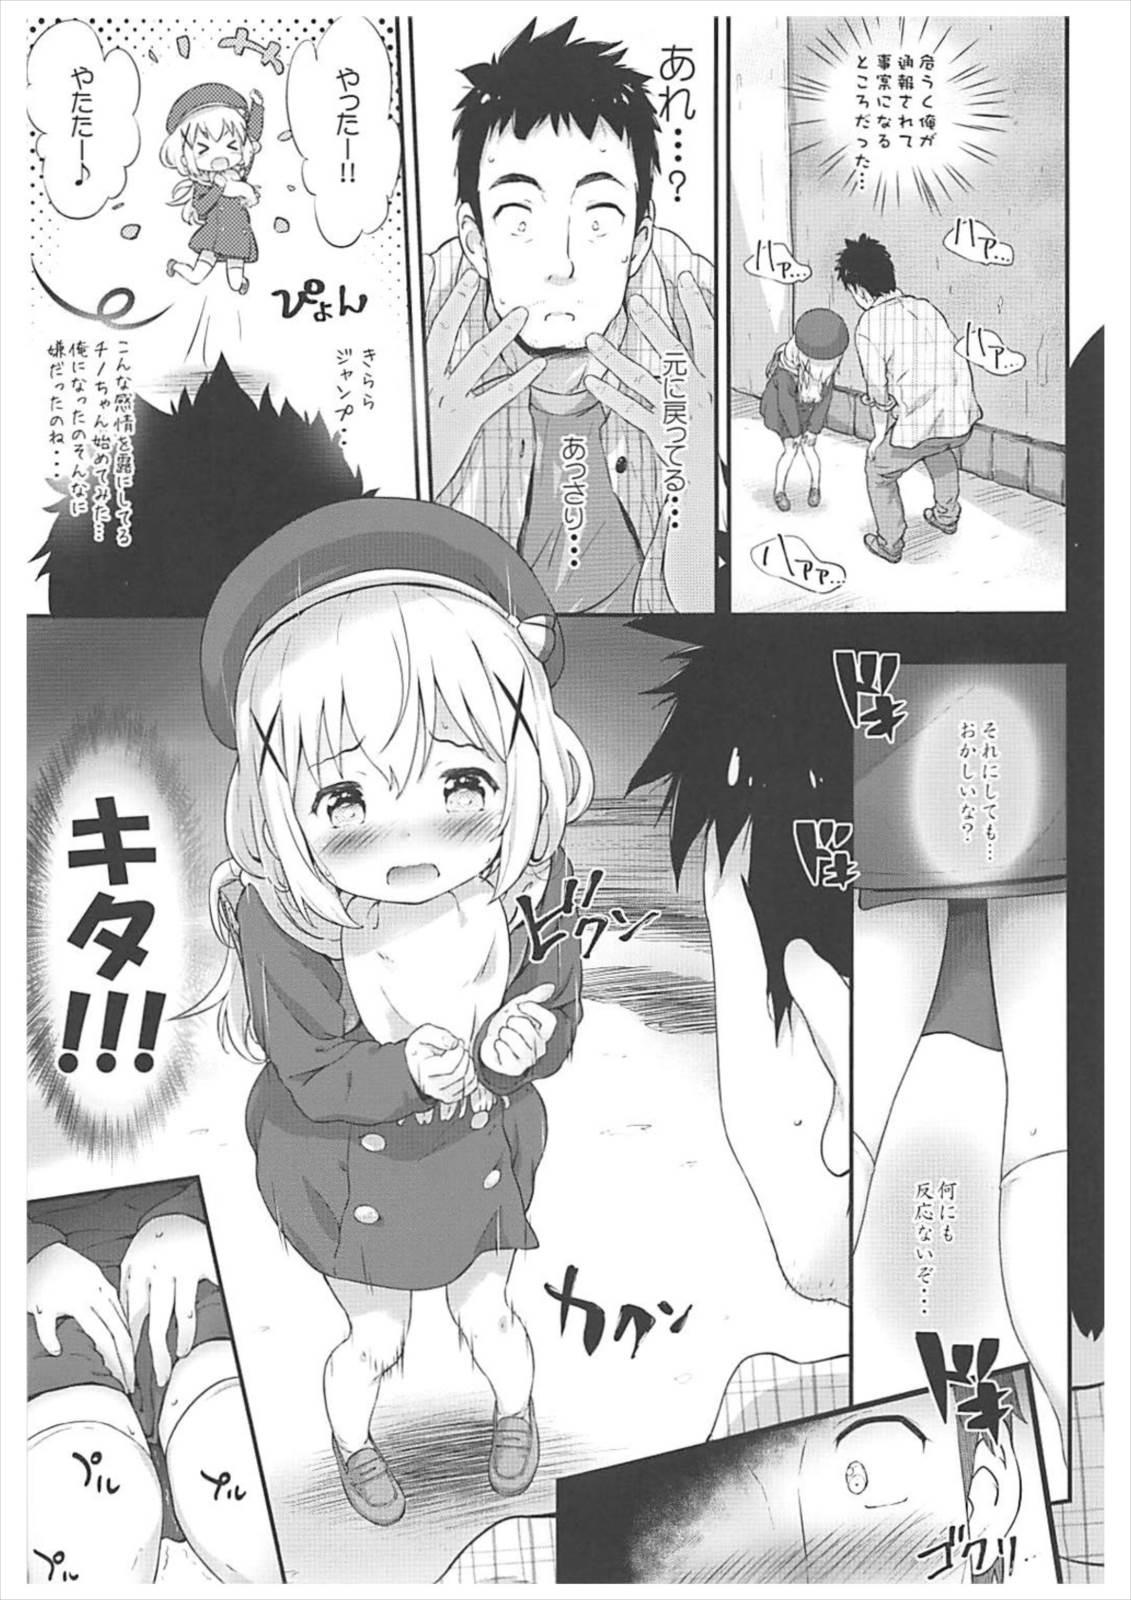 French Toro Musume 14 Chino-chan Hajimemashita 2 kai - Gochuumon wa usagi desu ka Cumming - Page 6